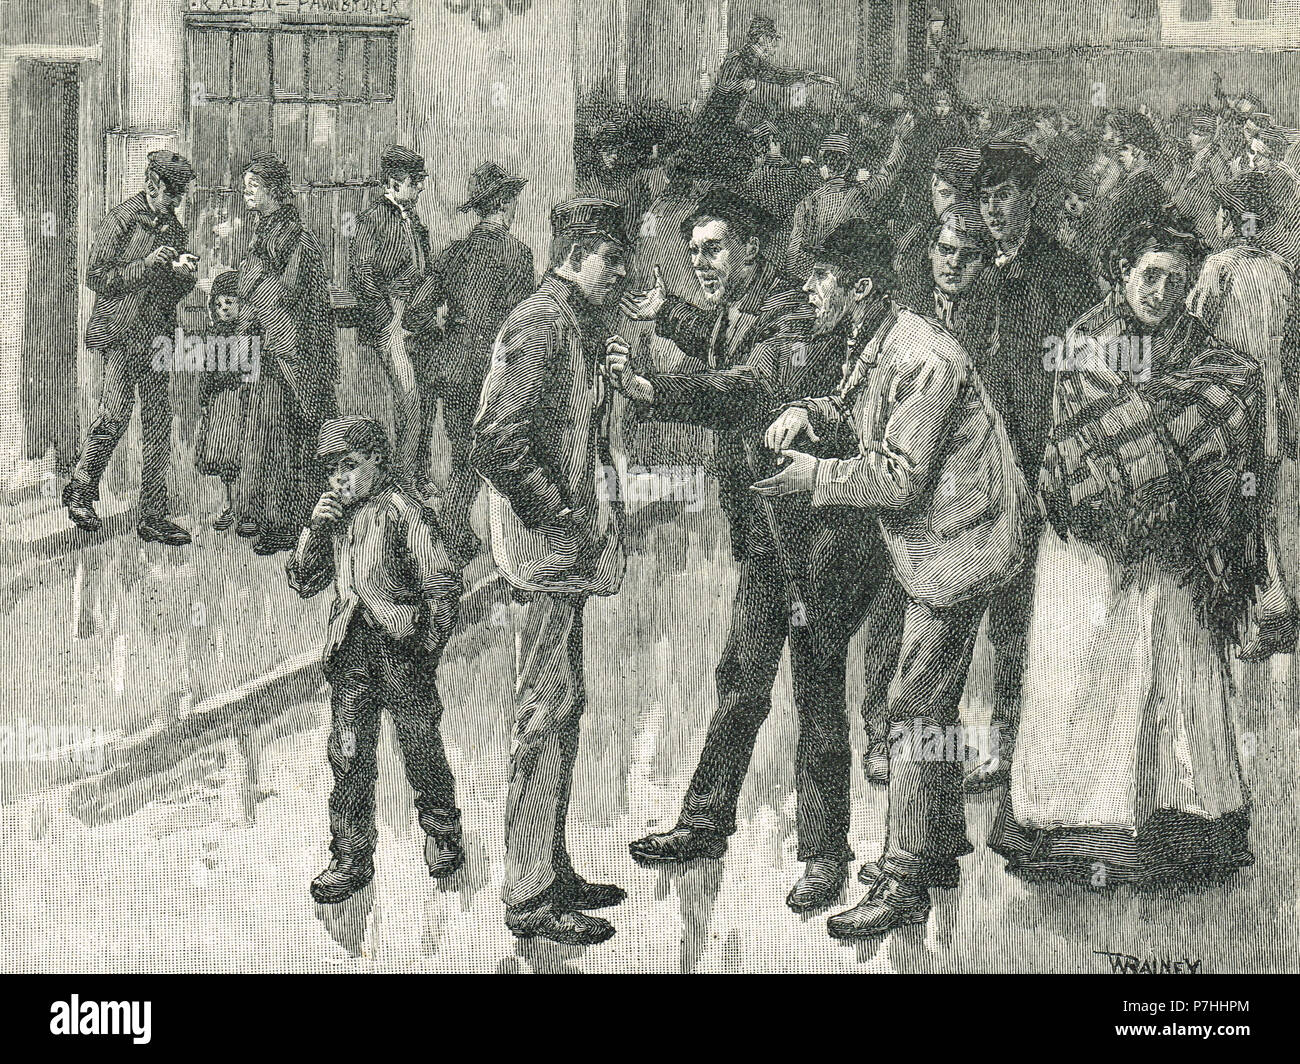 Eine Szene während der preston Streik von 1853 - 54, industriellen Unruhen in der Baumwollindustrie Stockfoto